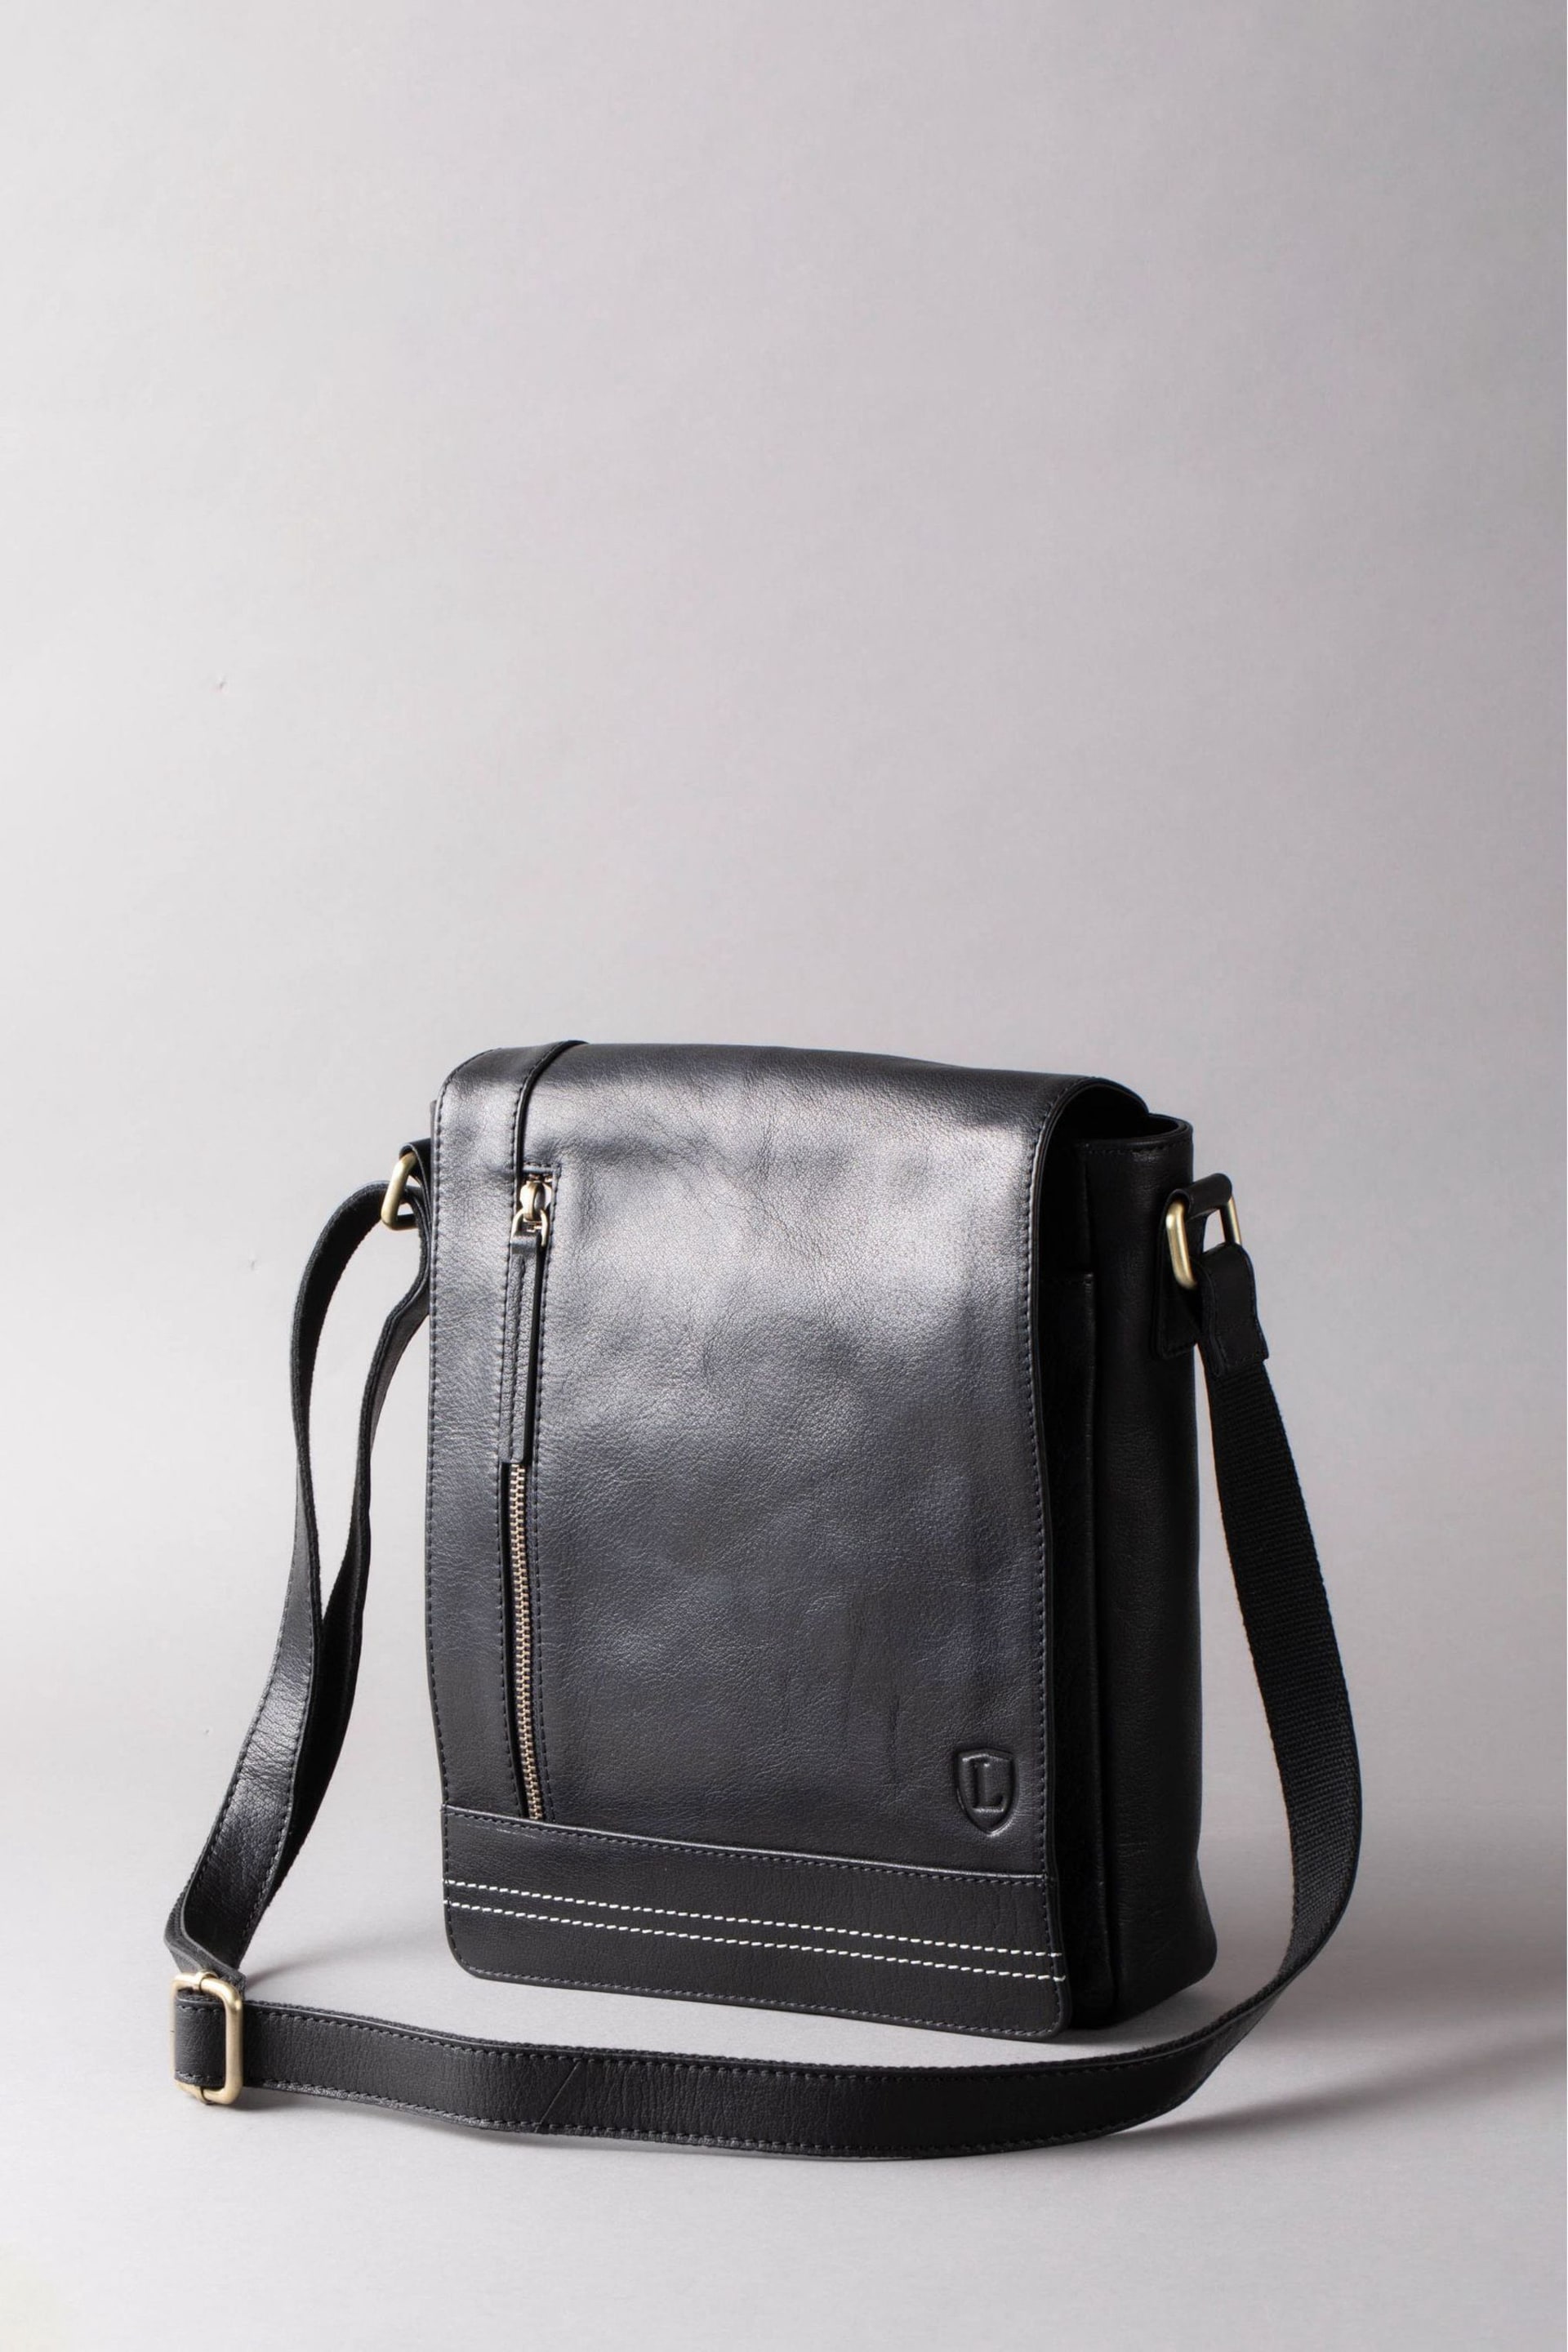 Lakeland Leather Keswick Medium Leather Messenger Bag In - Image 5 of 7